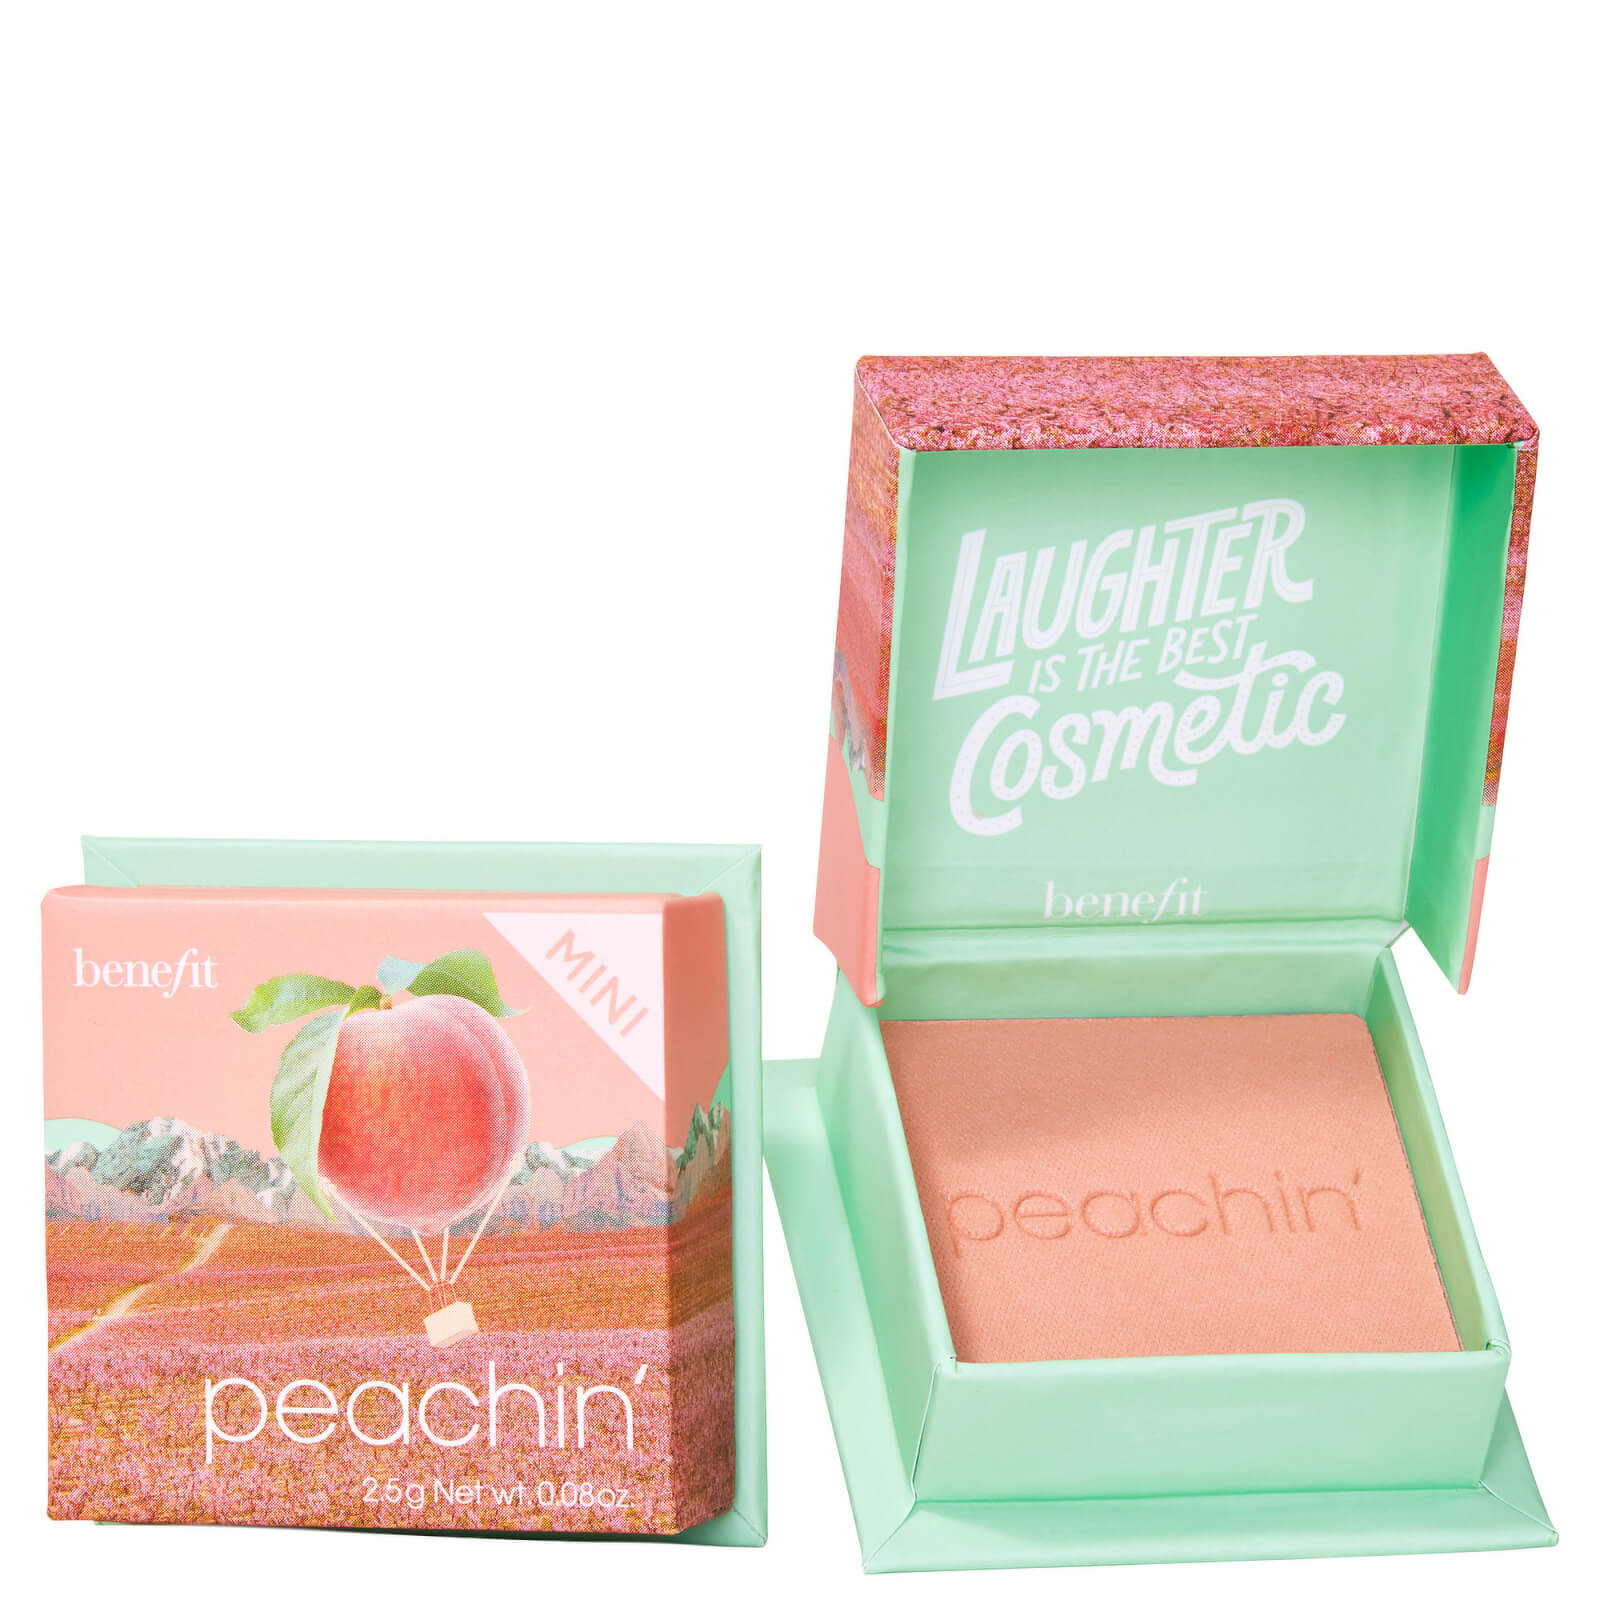 Photos - Face Powder / Blush Benefit Peachin Peach Blush Powder Mini 2.5g 